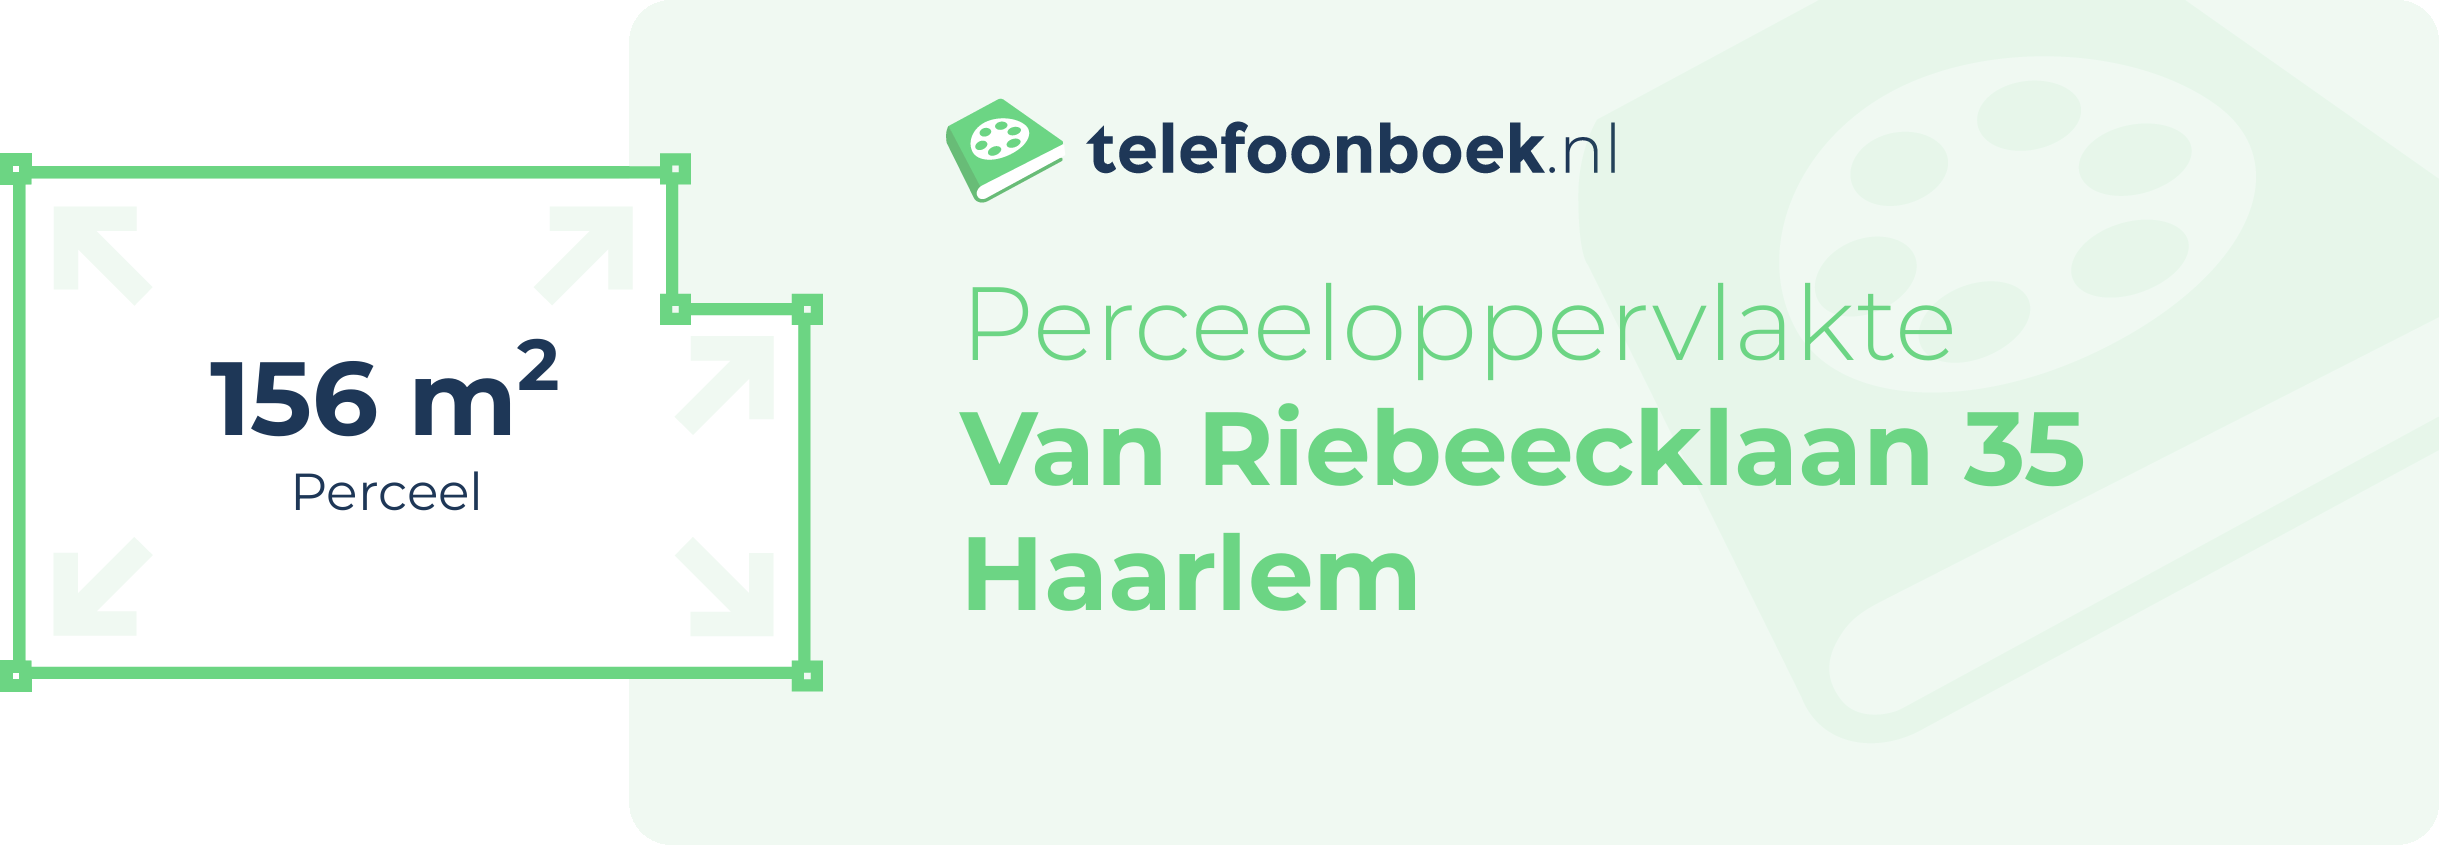 Perceeloppervlakte Van Riebeecklaan 35 Haarlem